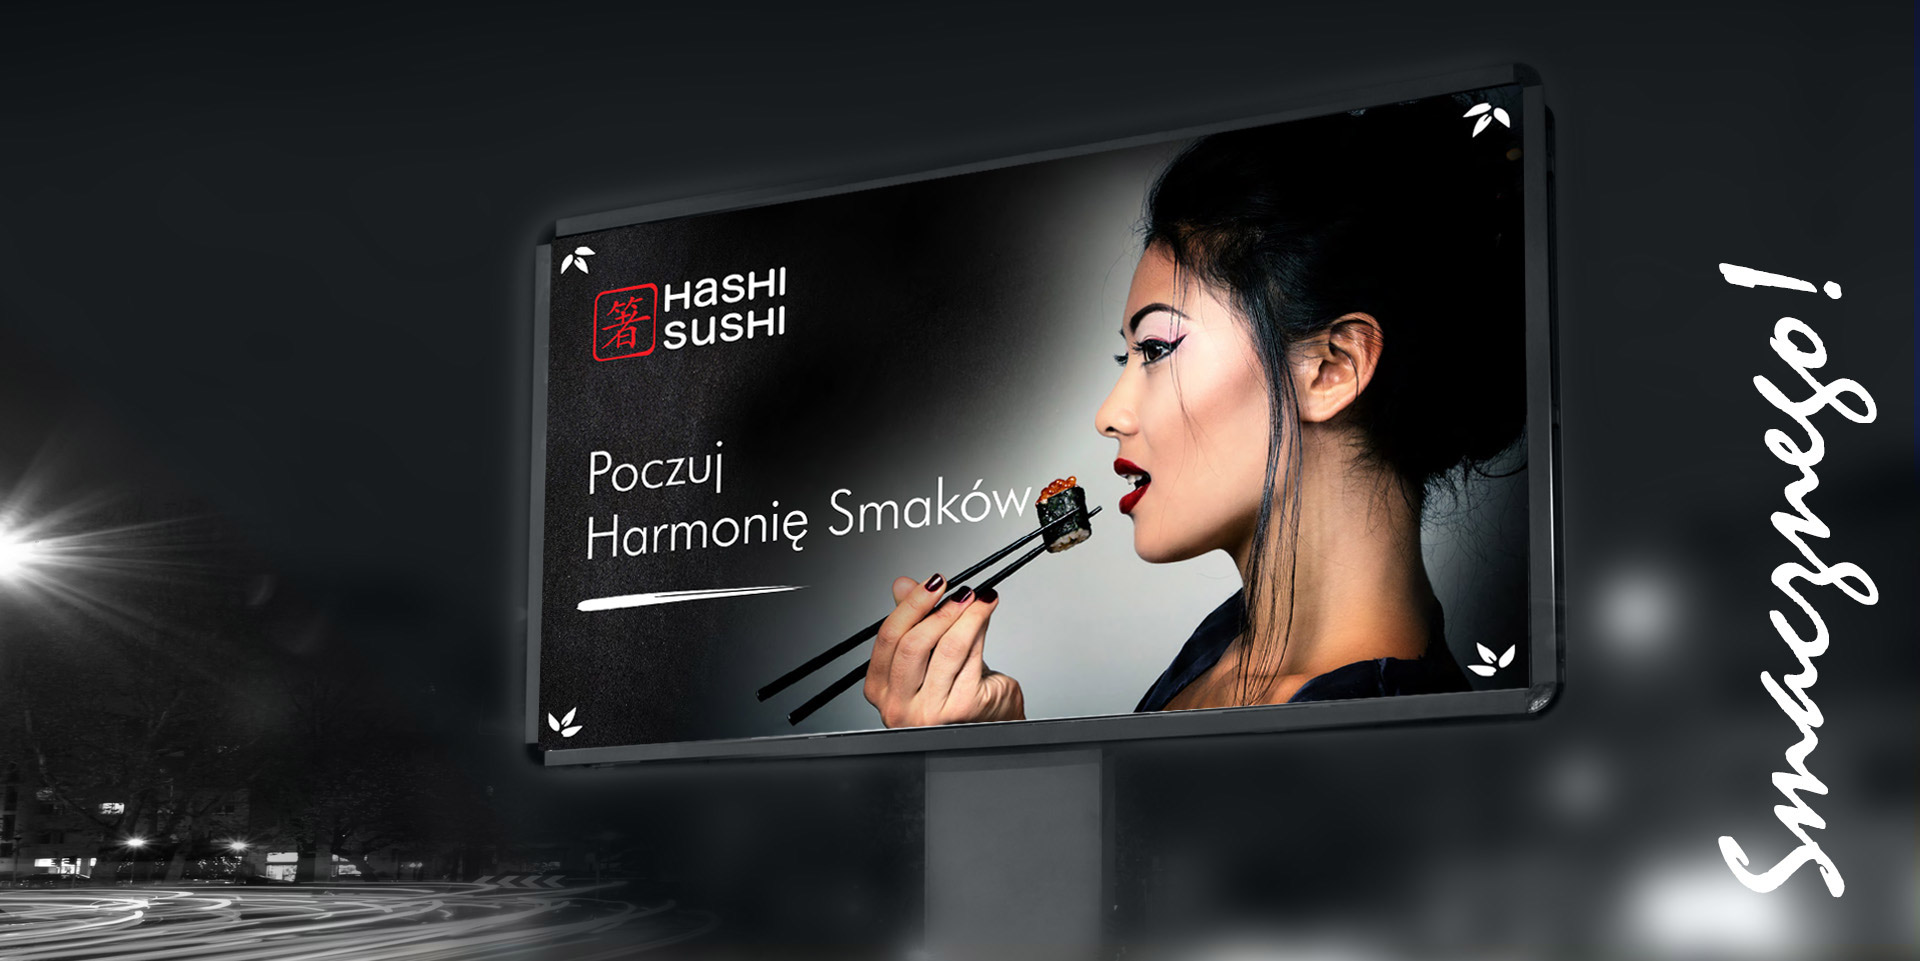 Hashi Sushi, identyfikacja wizualna, komunikacja reklamowa, projekt graficzny, key visual, kreacja